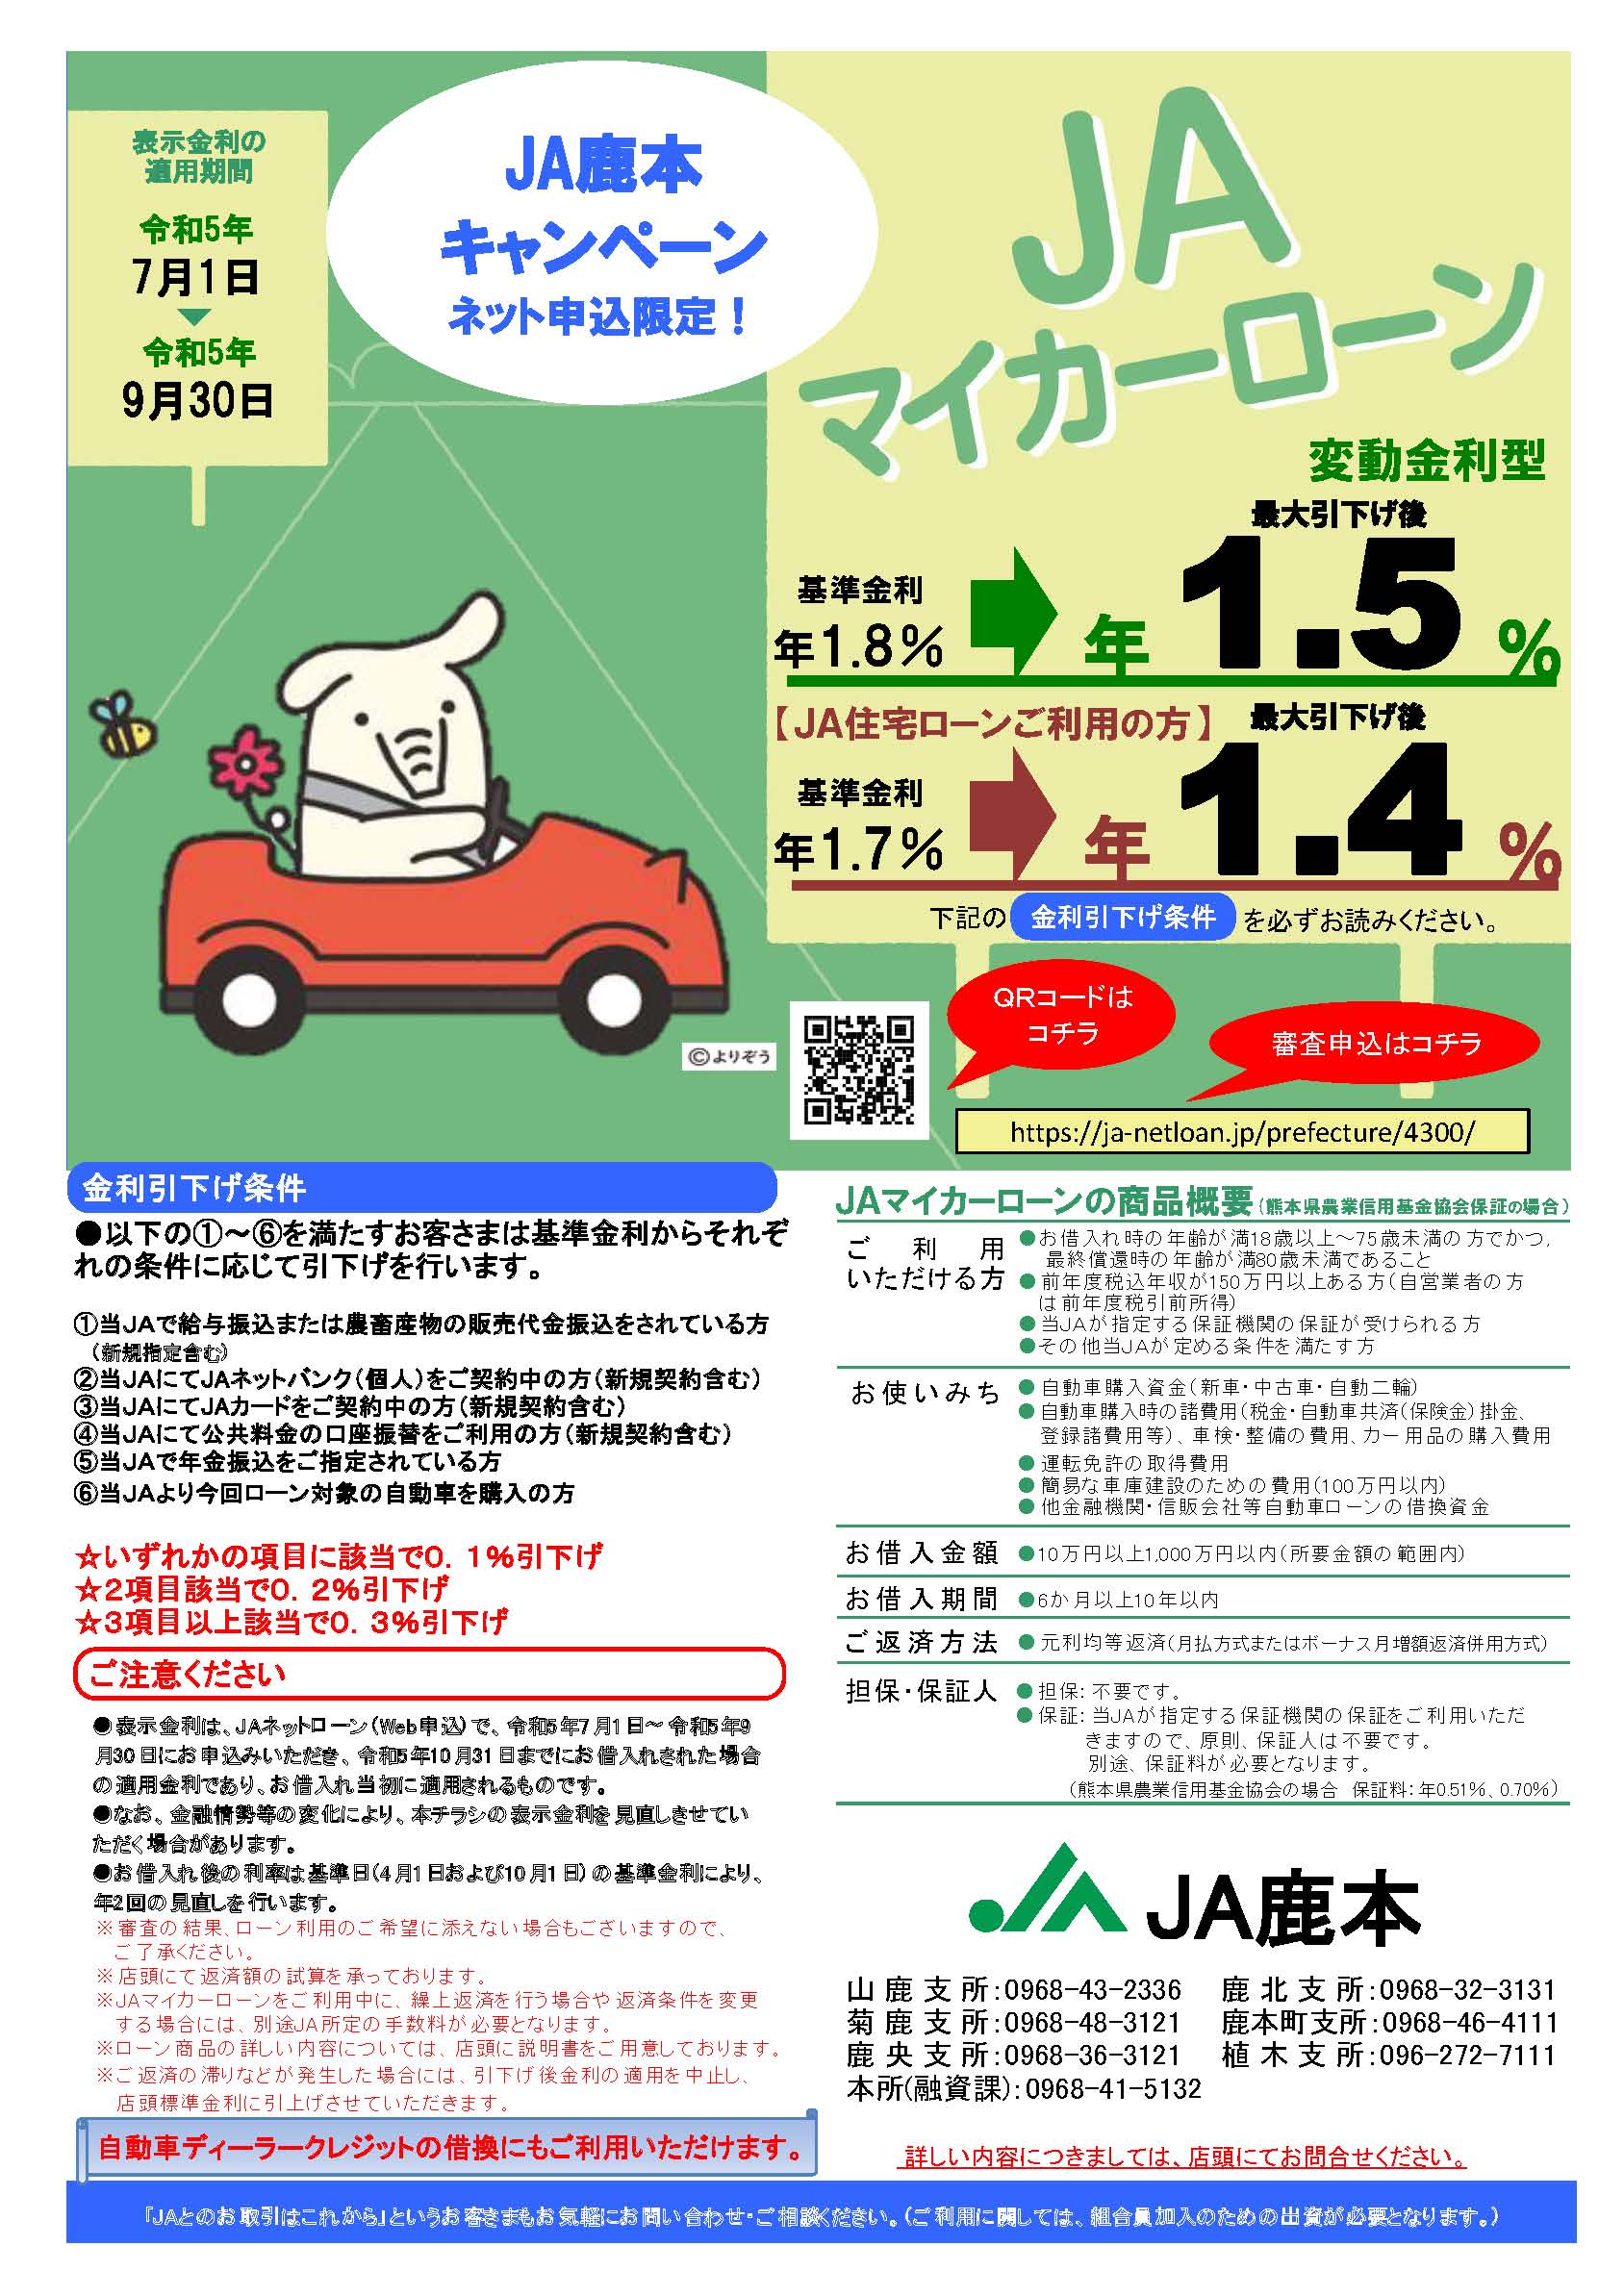 JA鹿本ではネット申込限定のマイカーローンキャンペーンを開催中です！